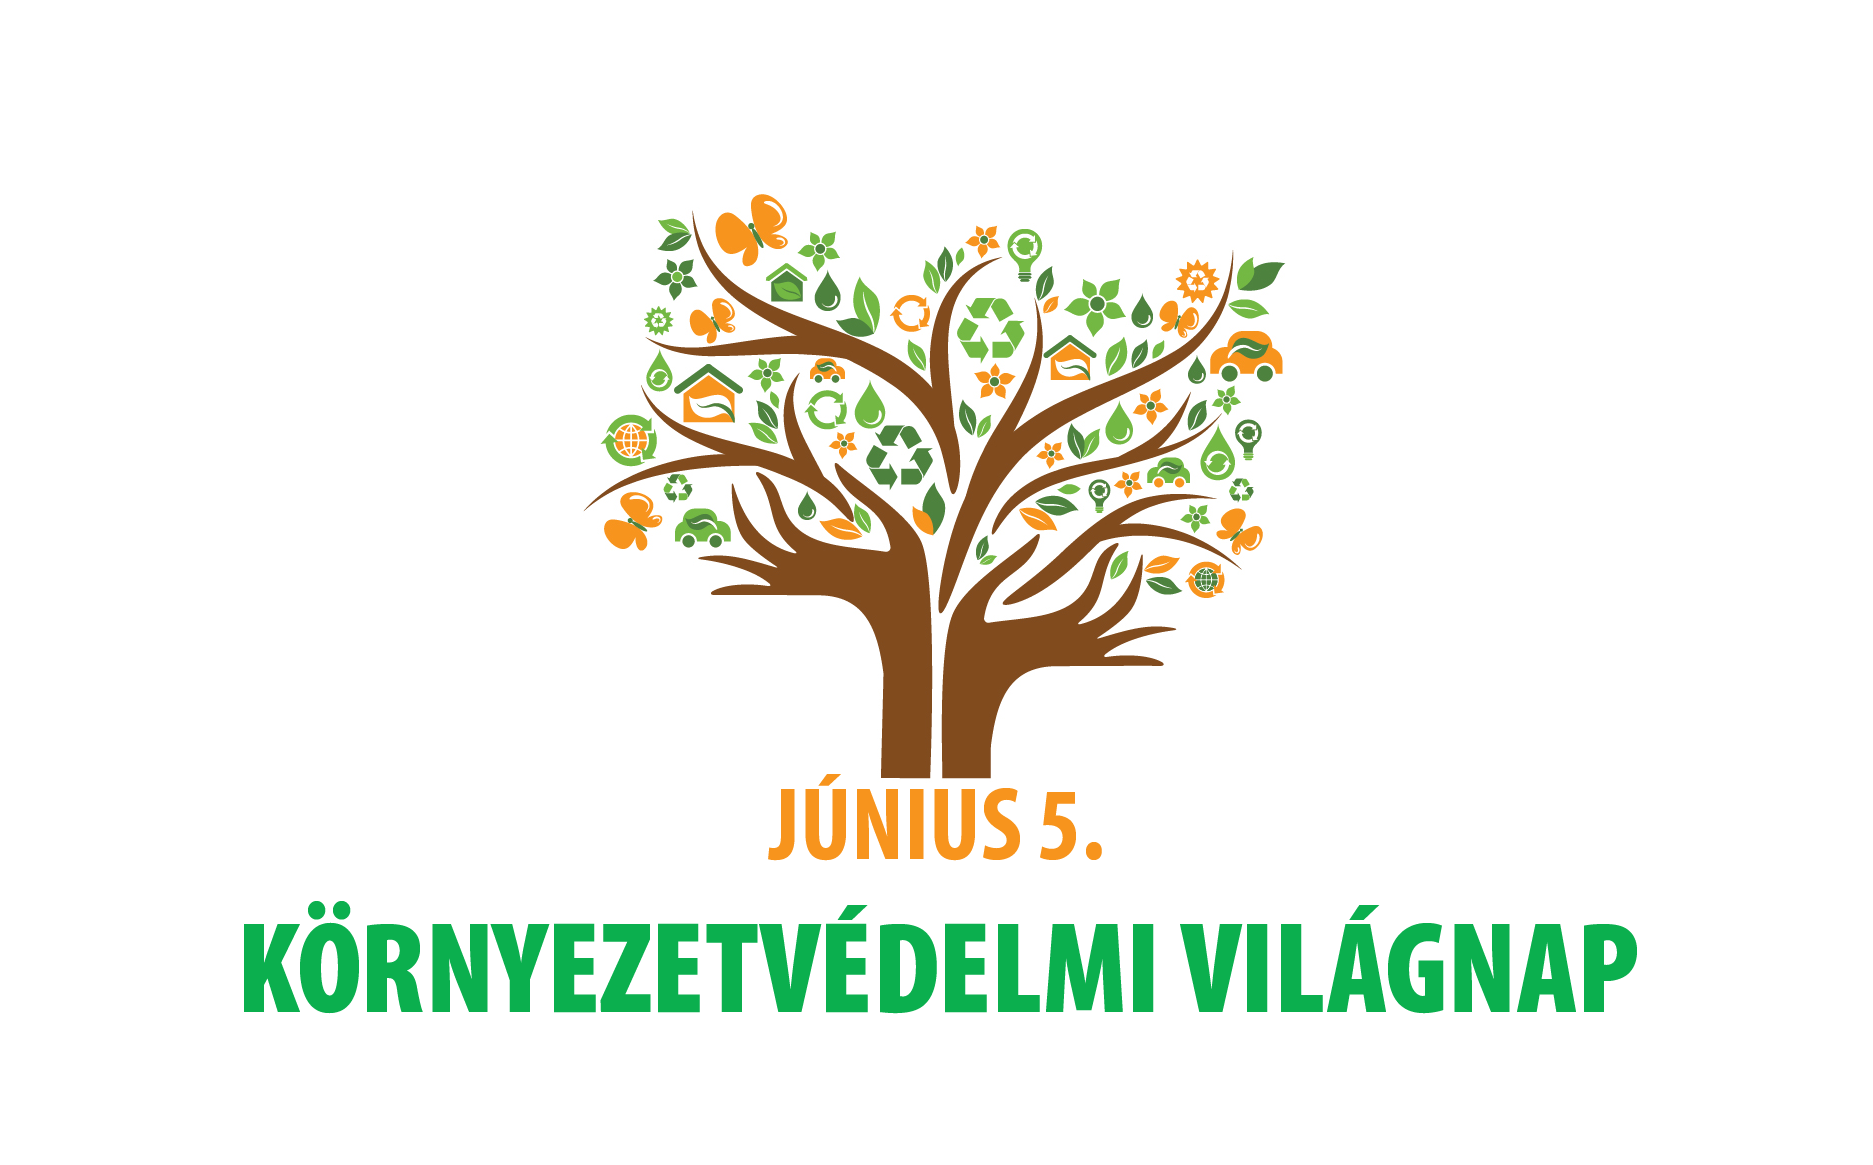 kornyezetvedelmi-vilagnap-logo.png